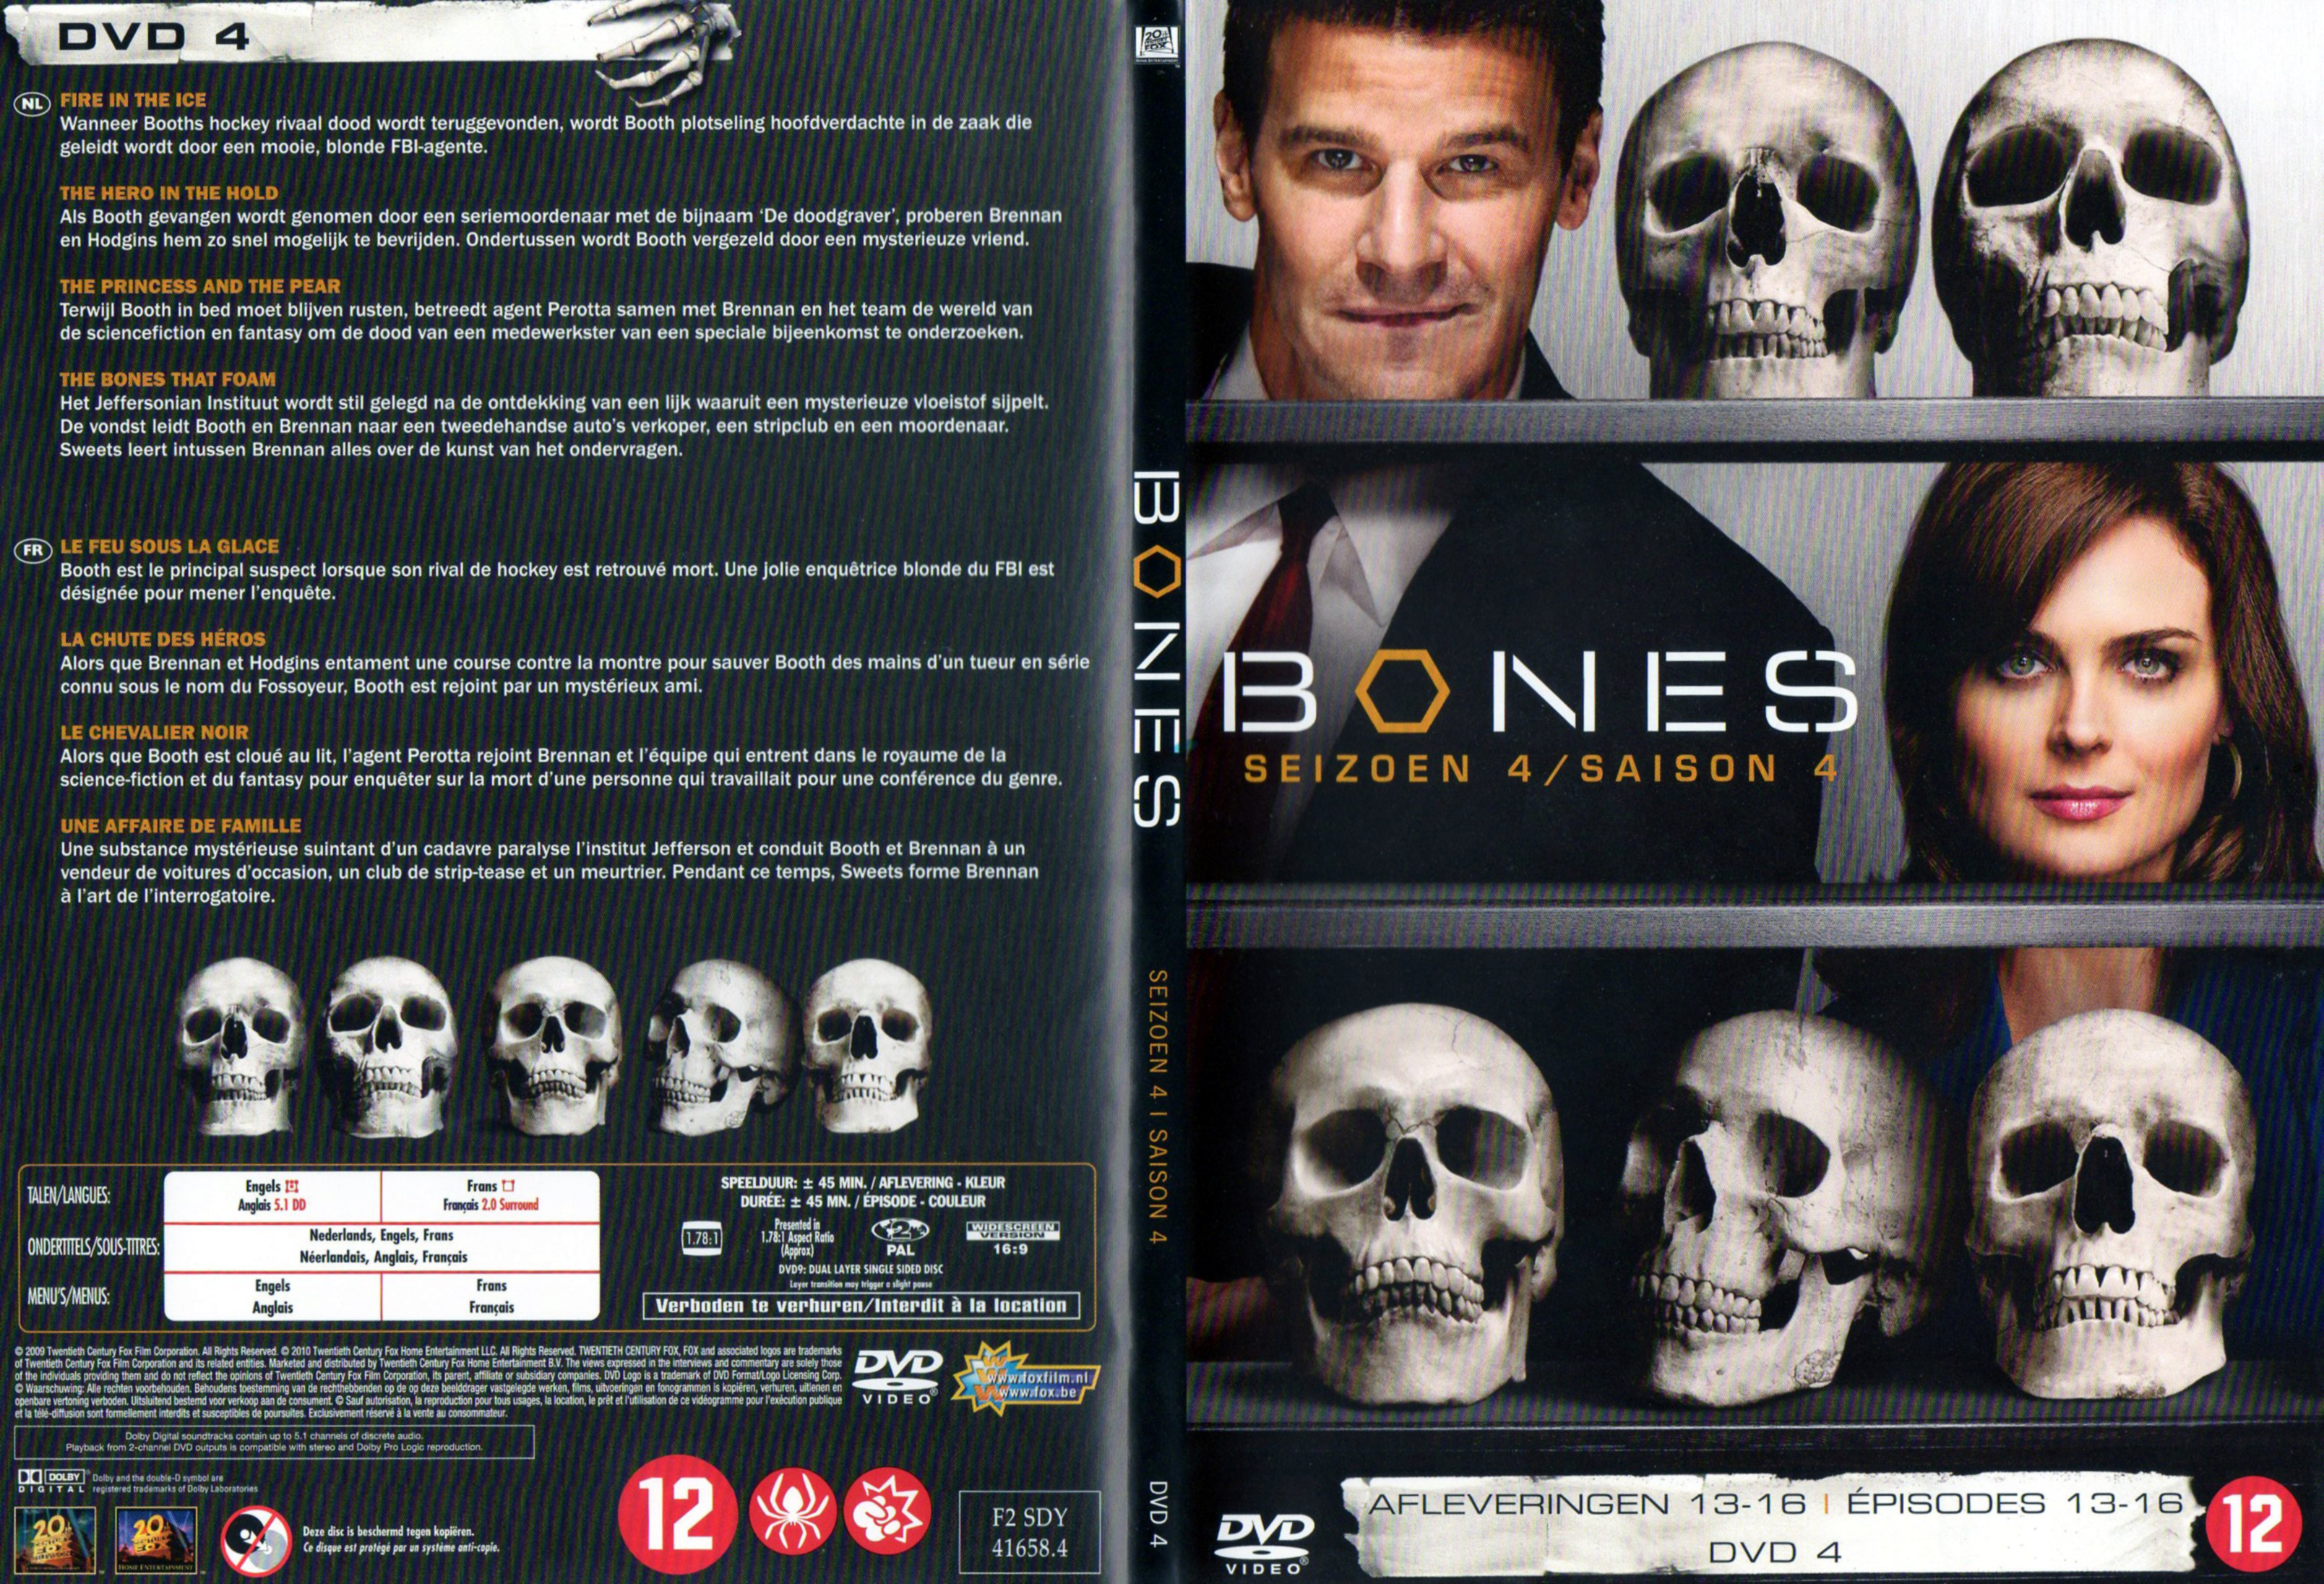 Jaquette DVD Bones Saison 4 DVD 4